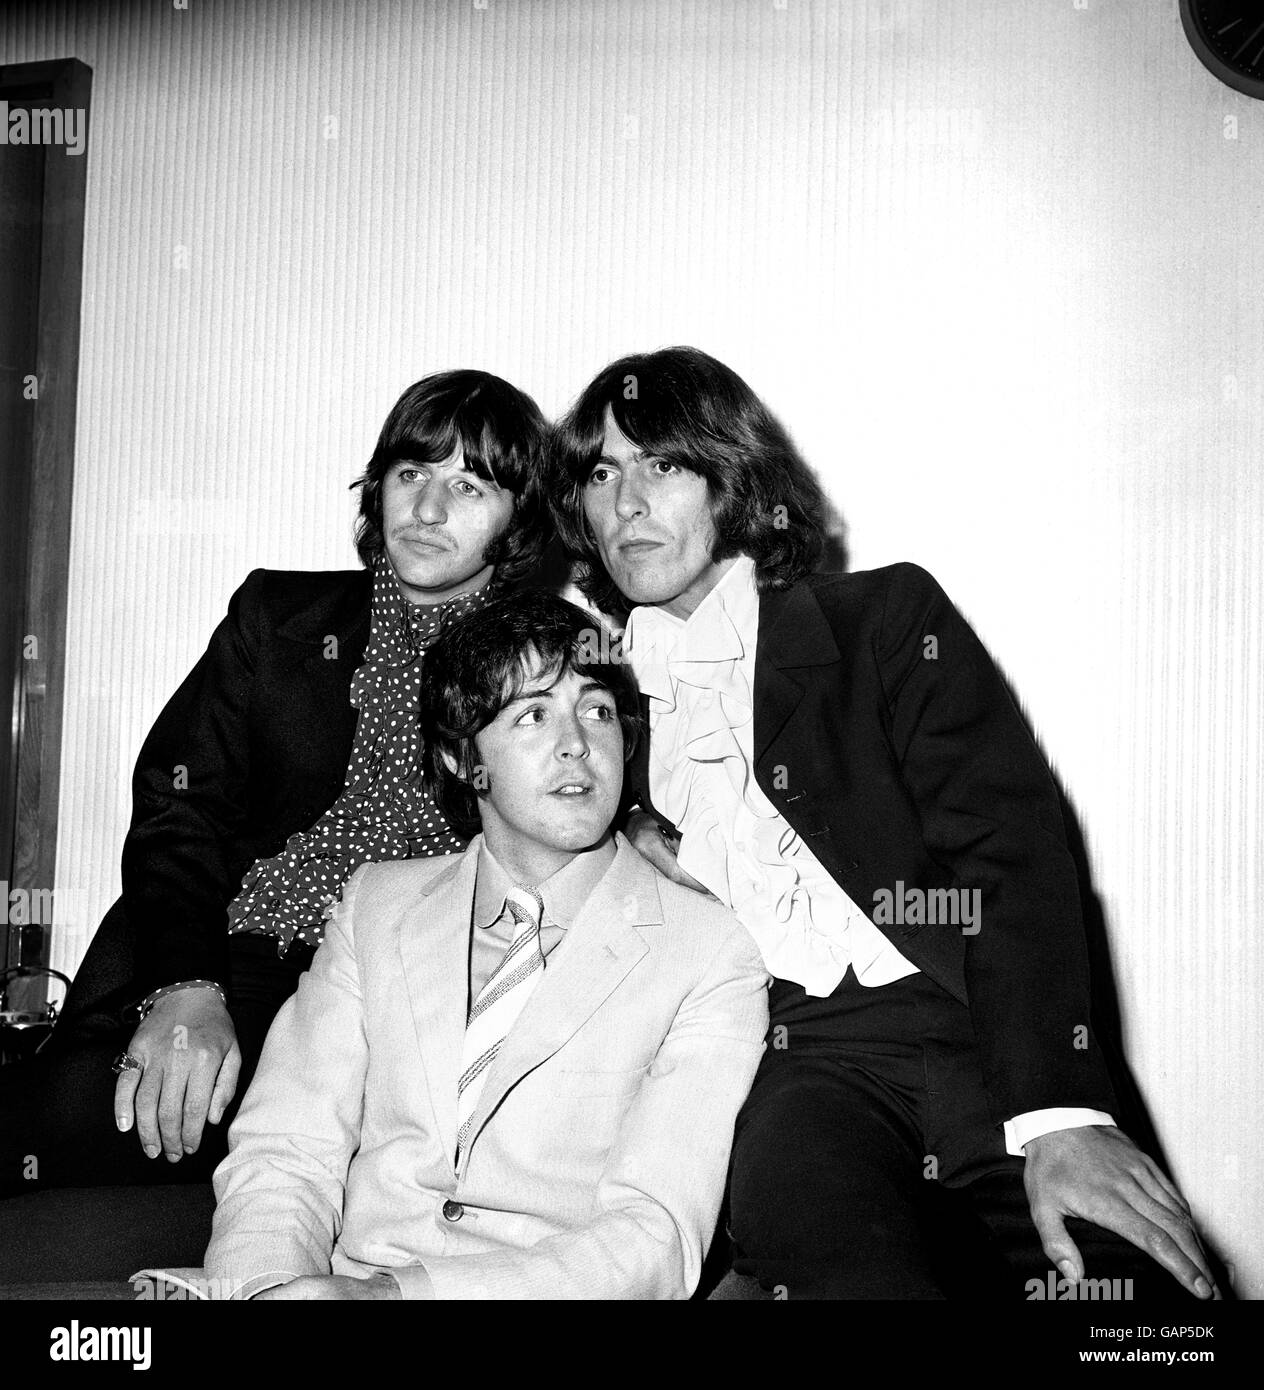 Les membres des Beatles, de gauche à droite, Ringo Starr, Paul McCartney et George Harrison lors d'une revue de presse du sous-marin jaune à la maison Bowater, à Knightsbridge. Banque D'Images